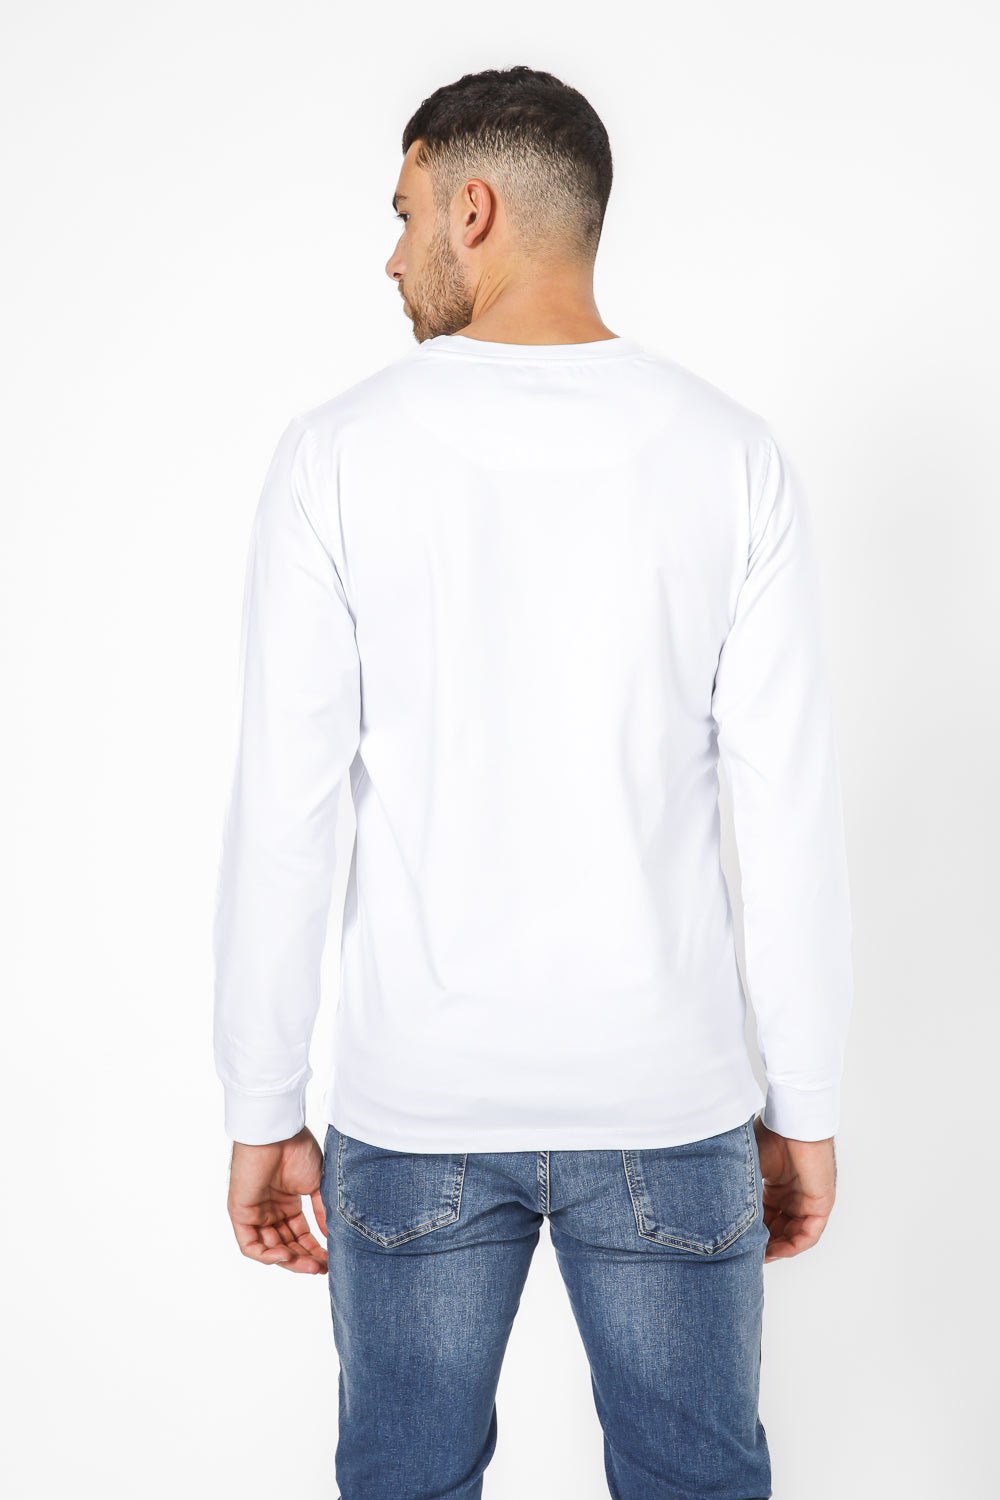 KENNETH COLE - חולצה ארוכה עם לוגו - MASHBIR//365